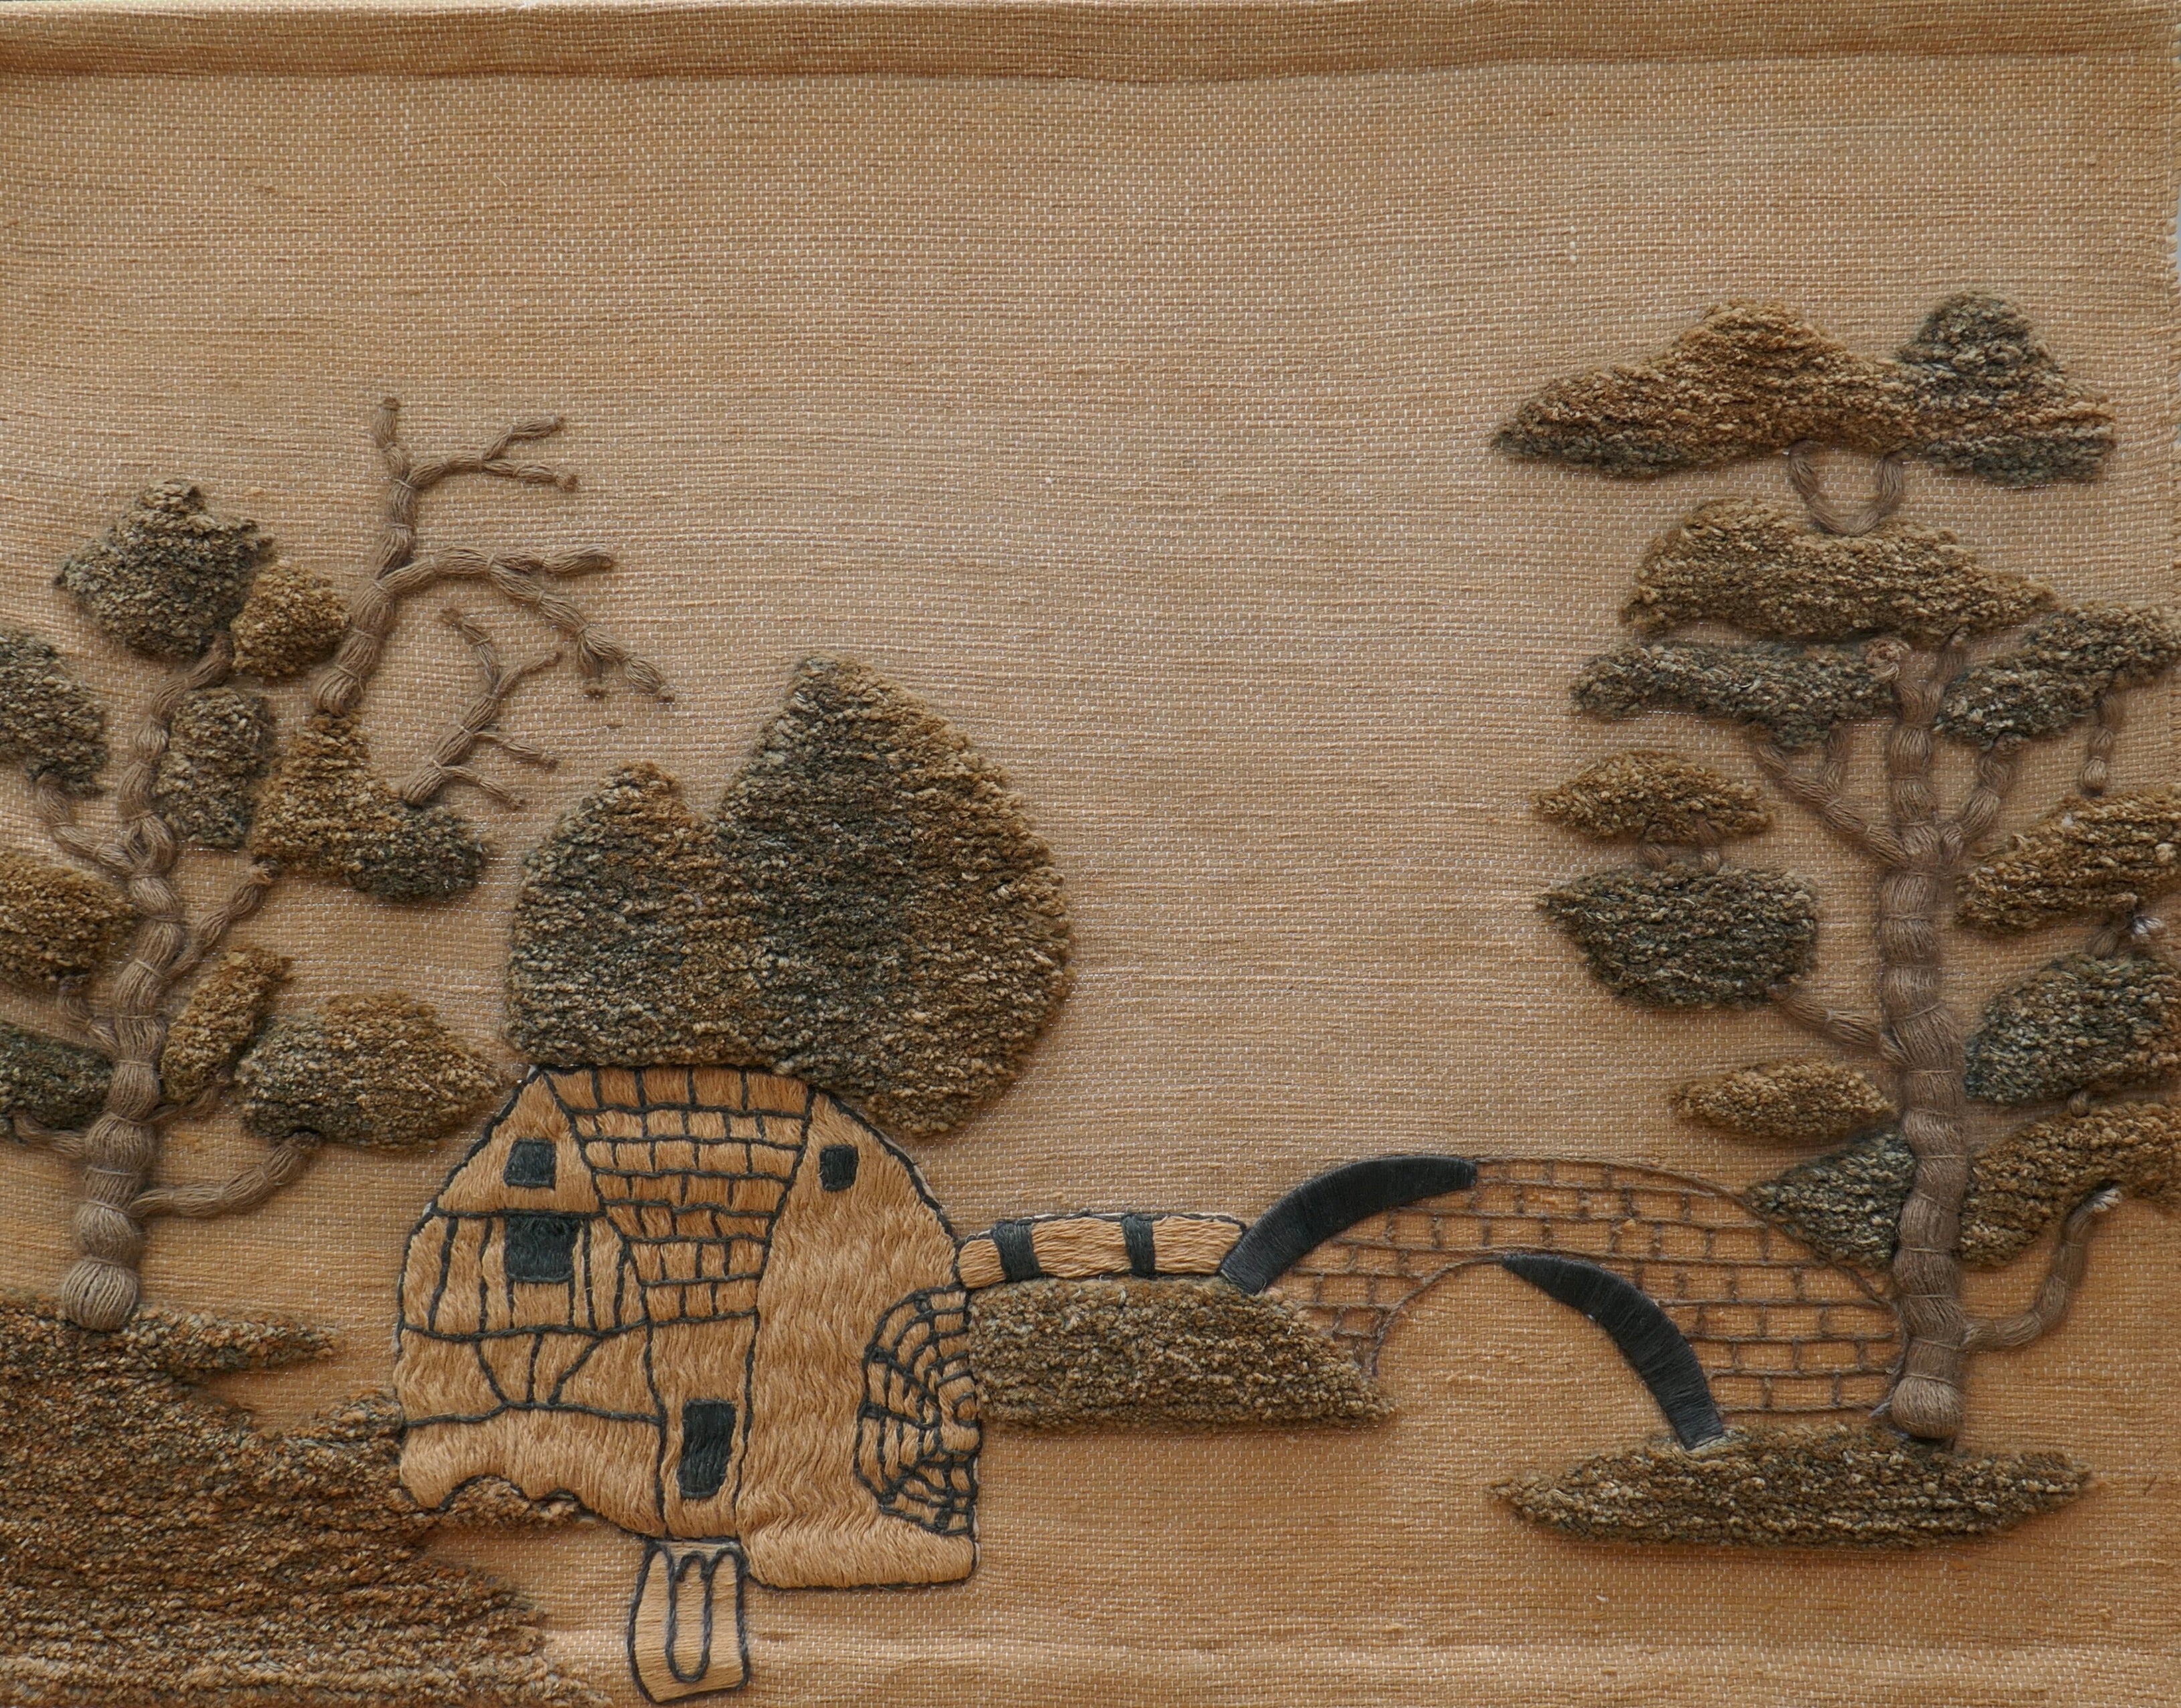 Une grande tapisserie représentant un paysage. Le fond de la toile est en jute. Motifs en fibres naturelles représentant une maison avec un étang et des arbres, dans un style japonais.
Cette fantastique tenture murale est l'un des meilleurs exemples